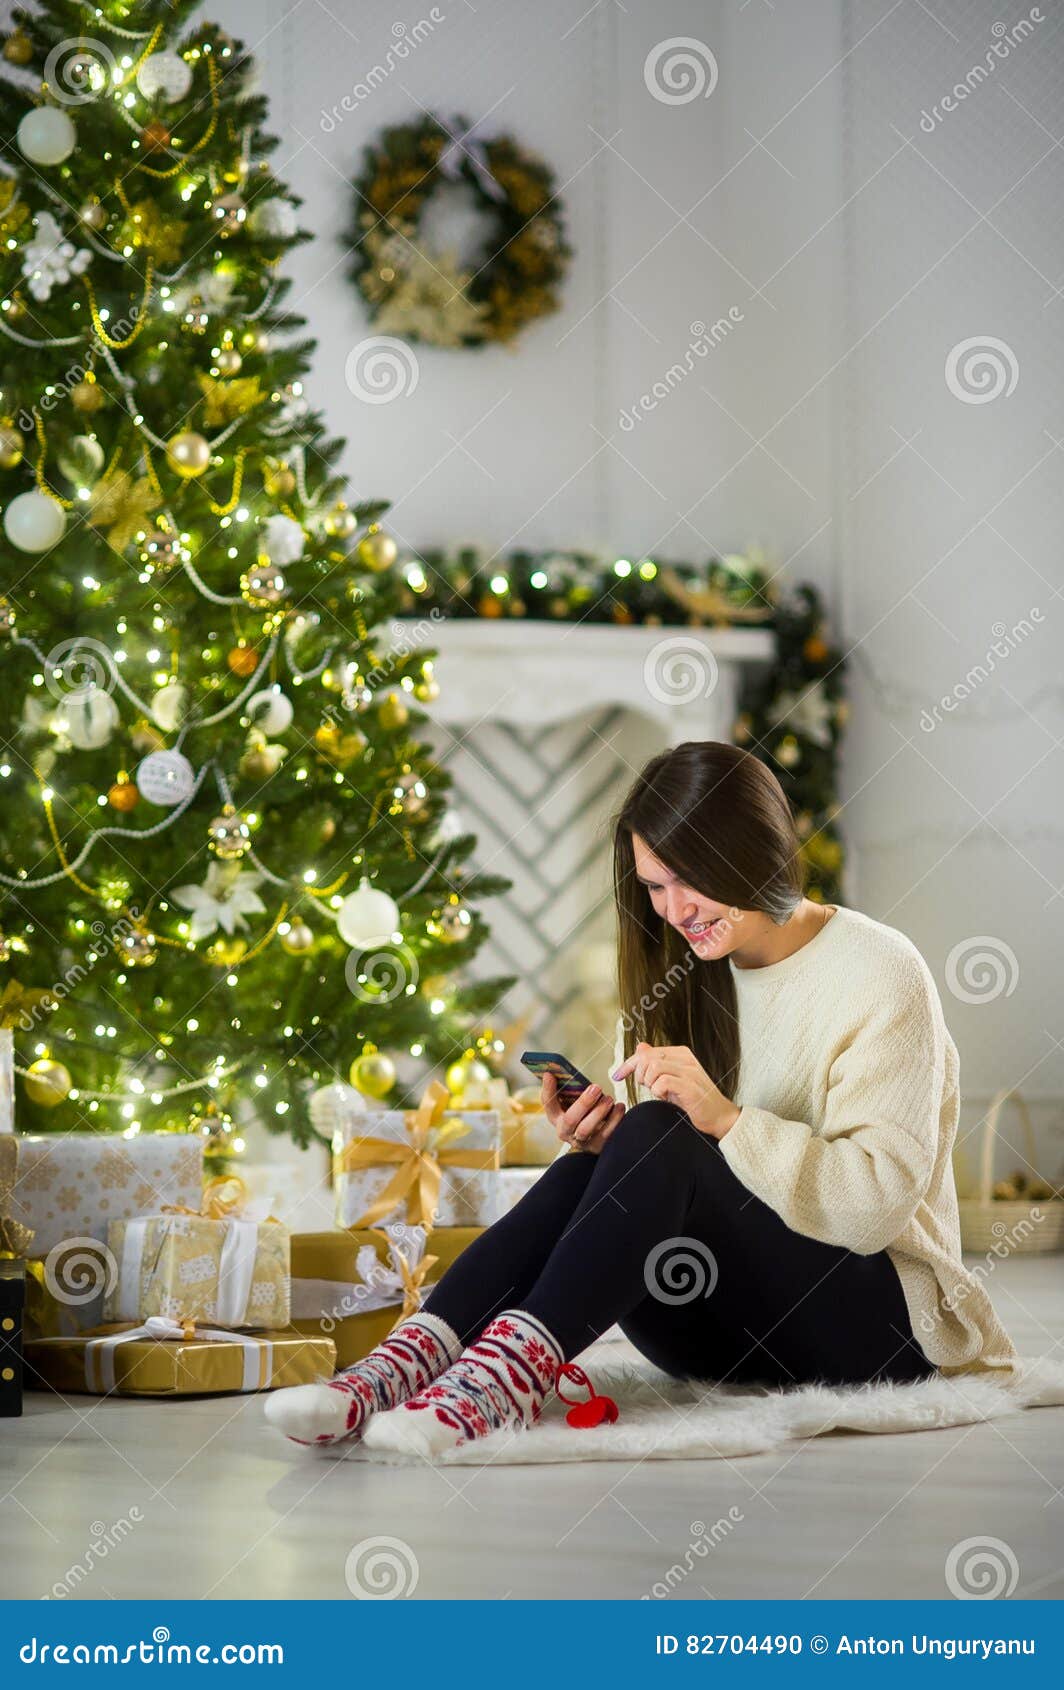 Сидит на елочке. Девушка сидит около елки. Сидя возле елки. Девушка возле елки. Девочка сидит около ёлки на полу.